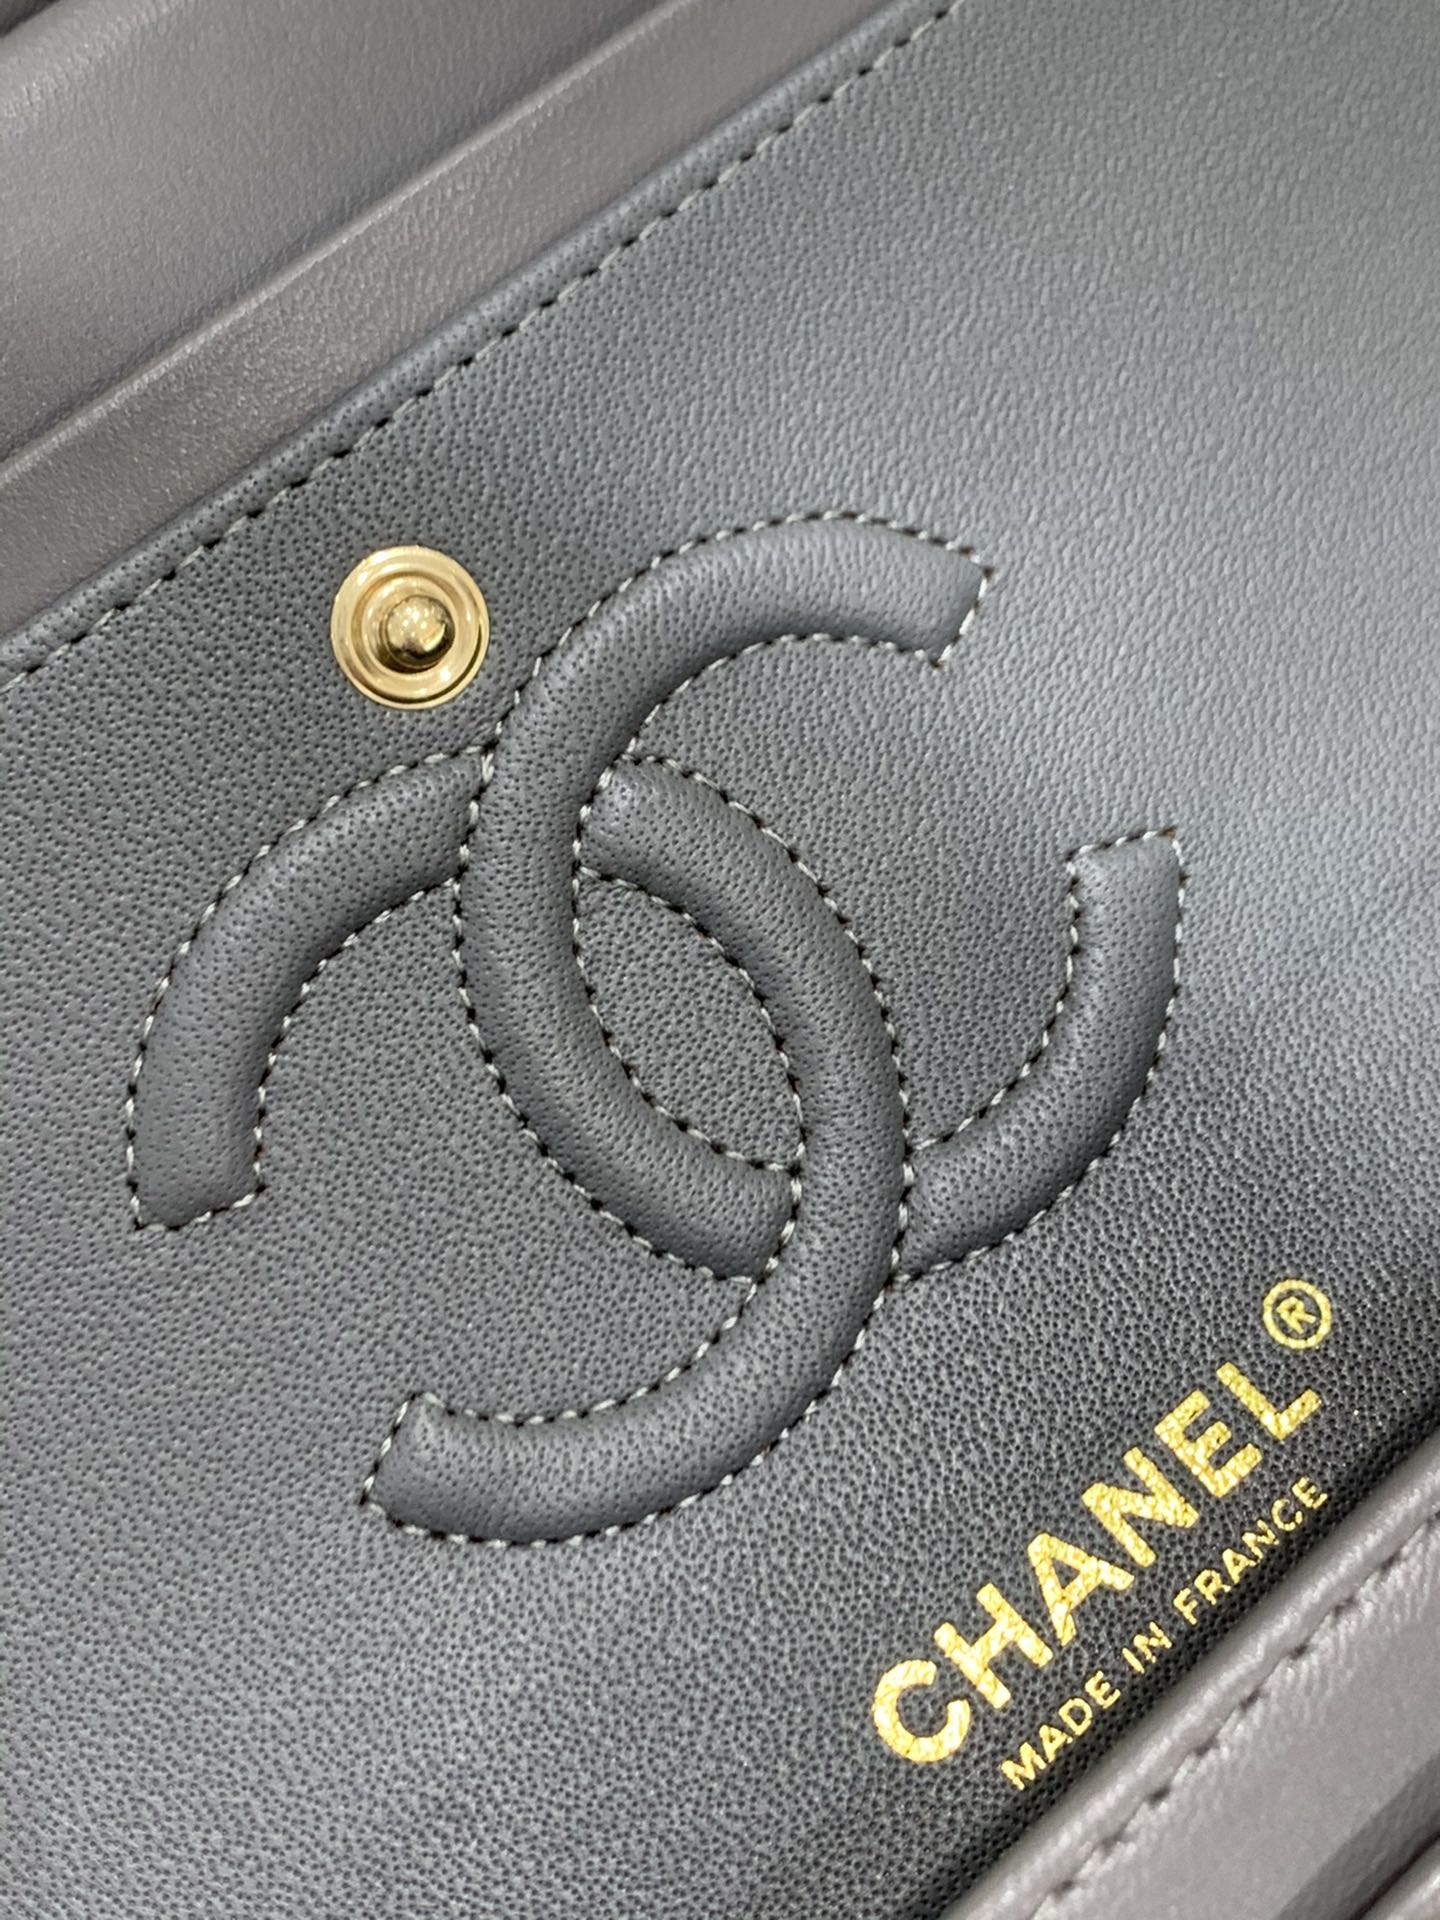 现货  【真品级】Chanel CF 23cm  原厂bodin joyeux 羔羊皮  经典永远百搭 灰色 浅金扣